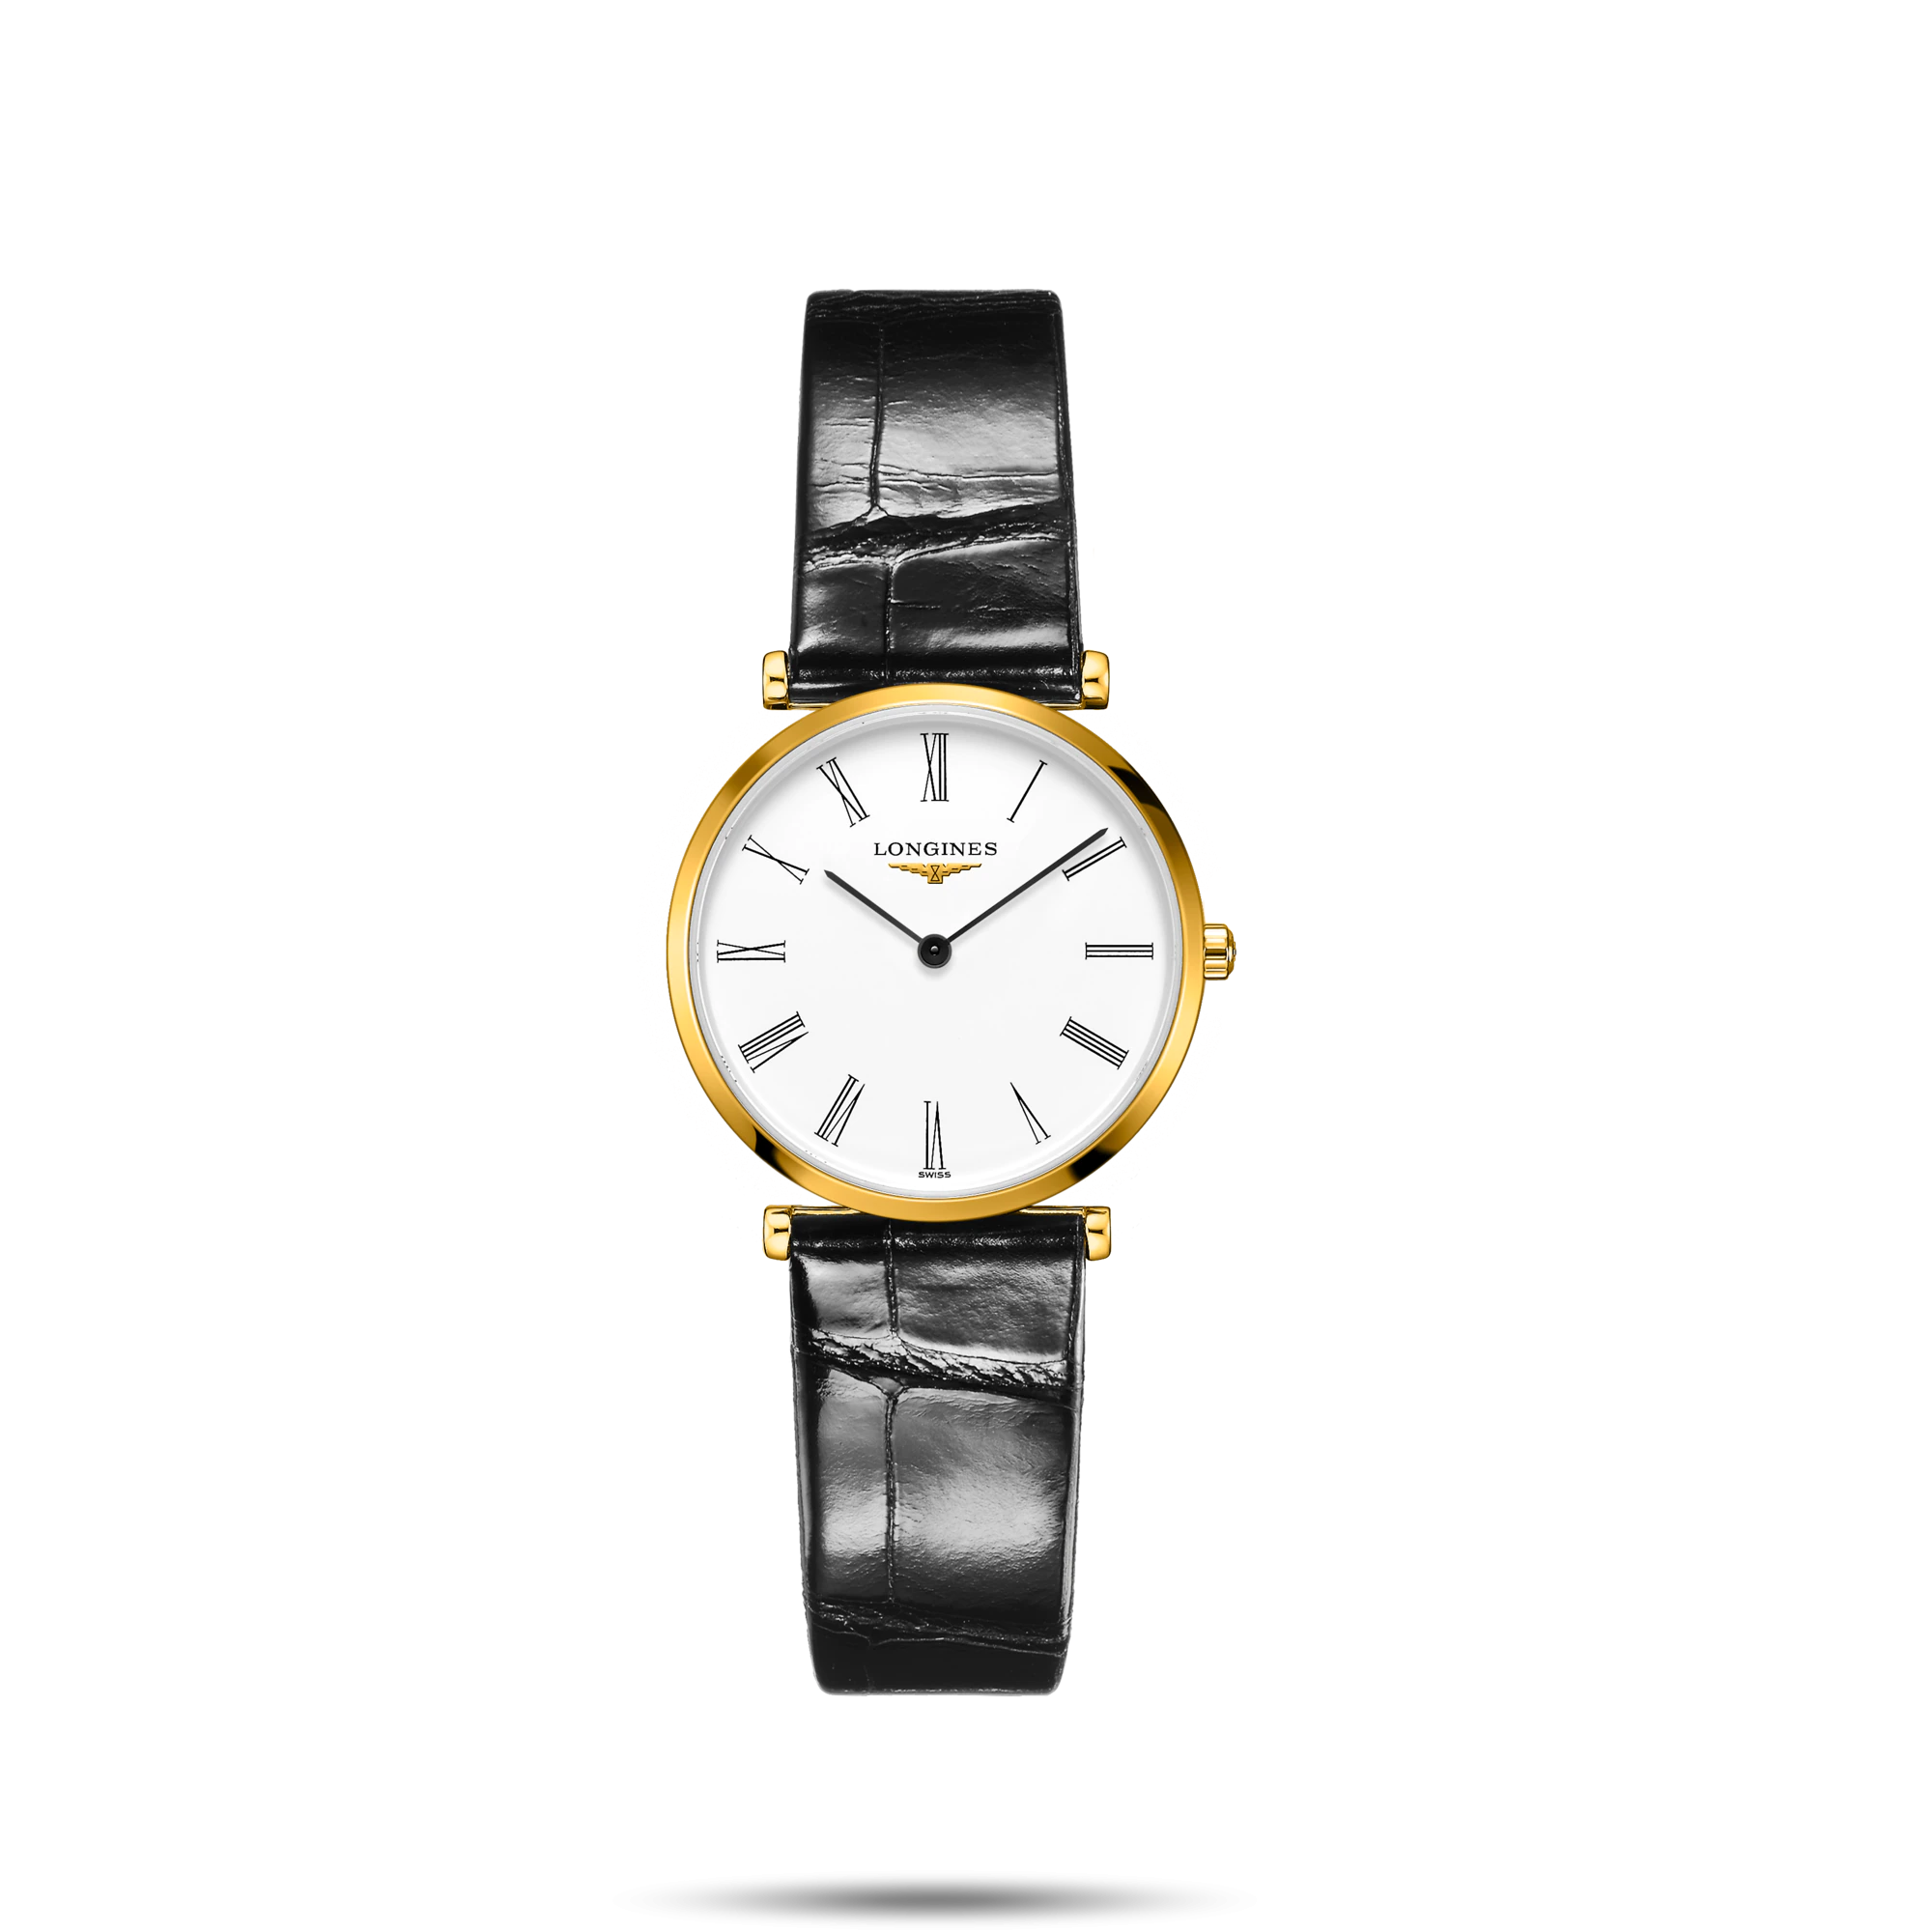 ساعت لونژین مدل L4.512.2.11.2